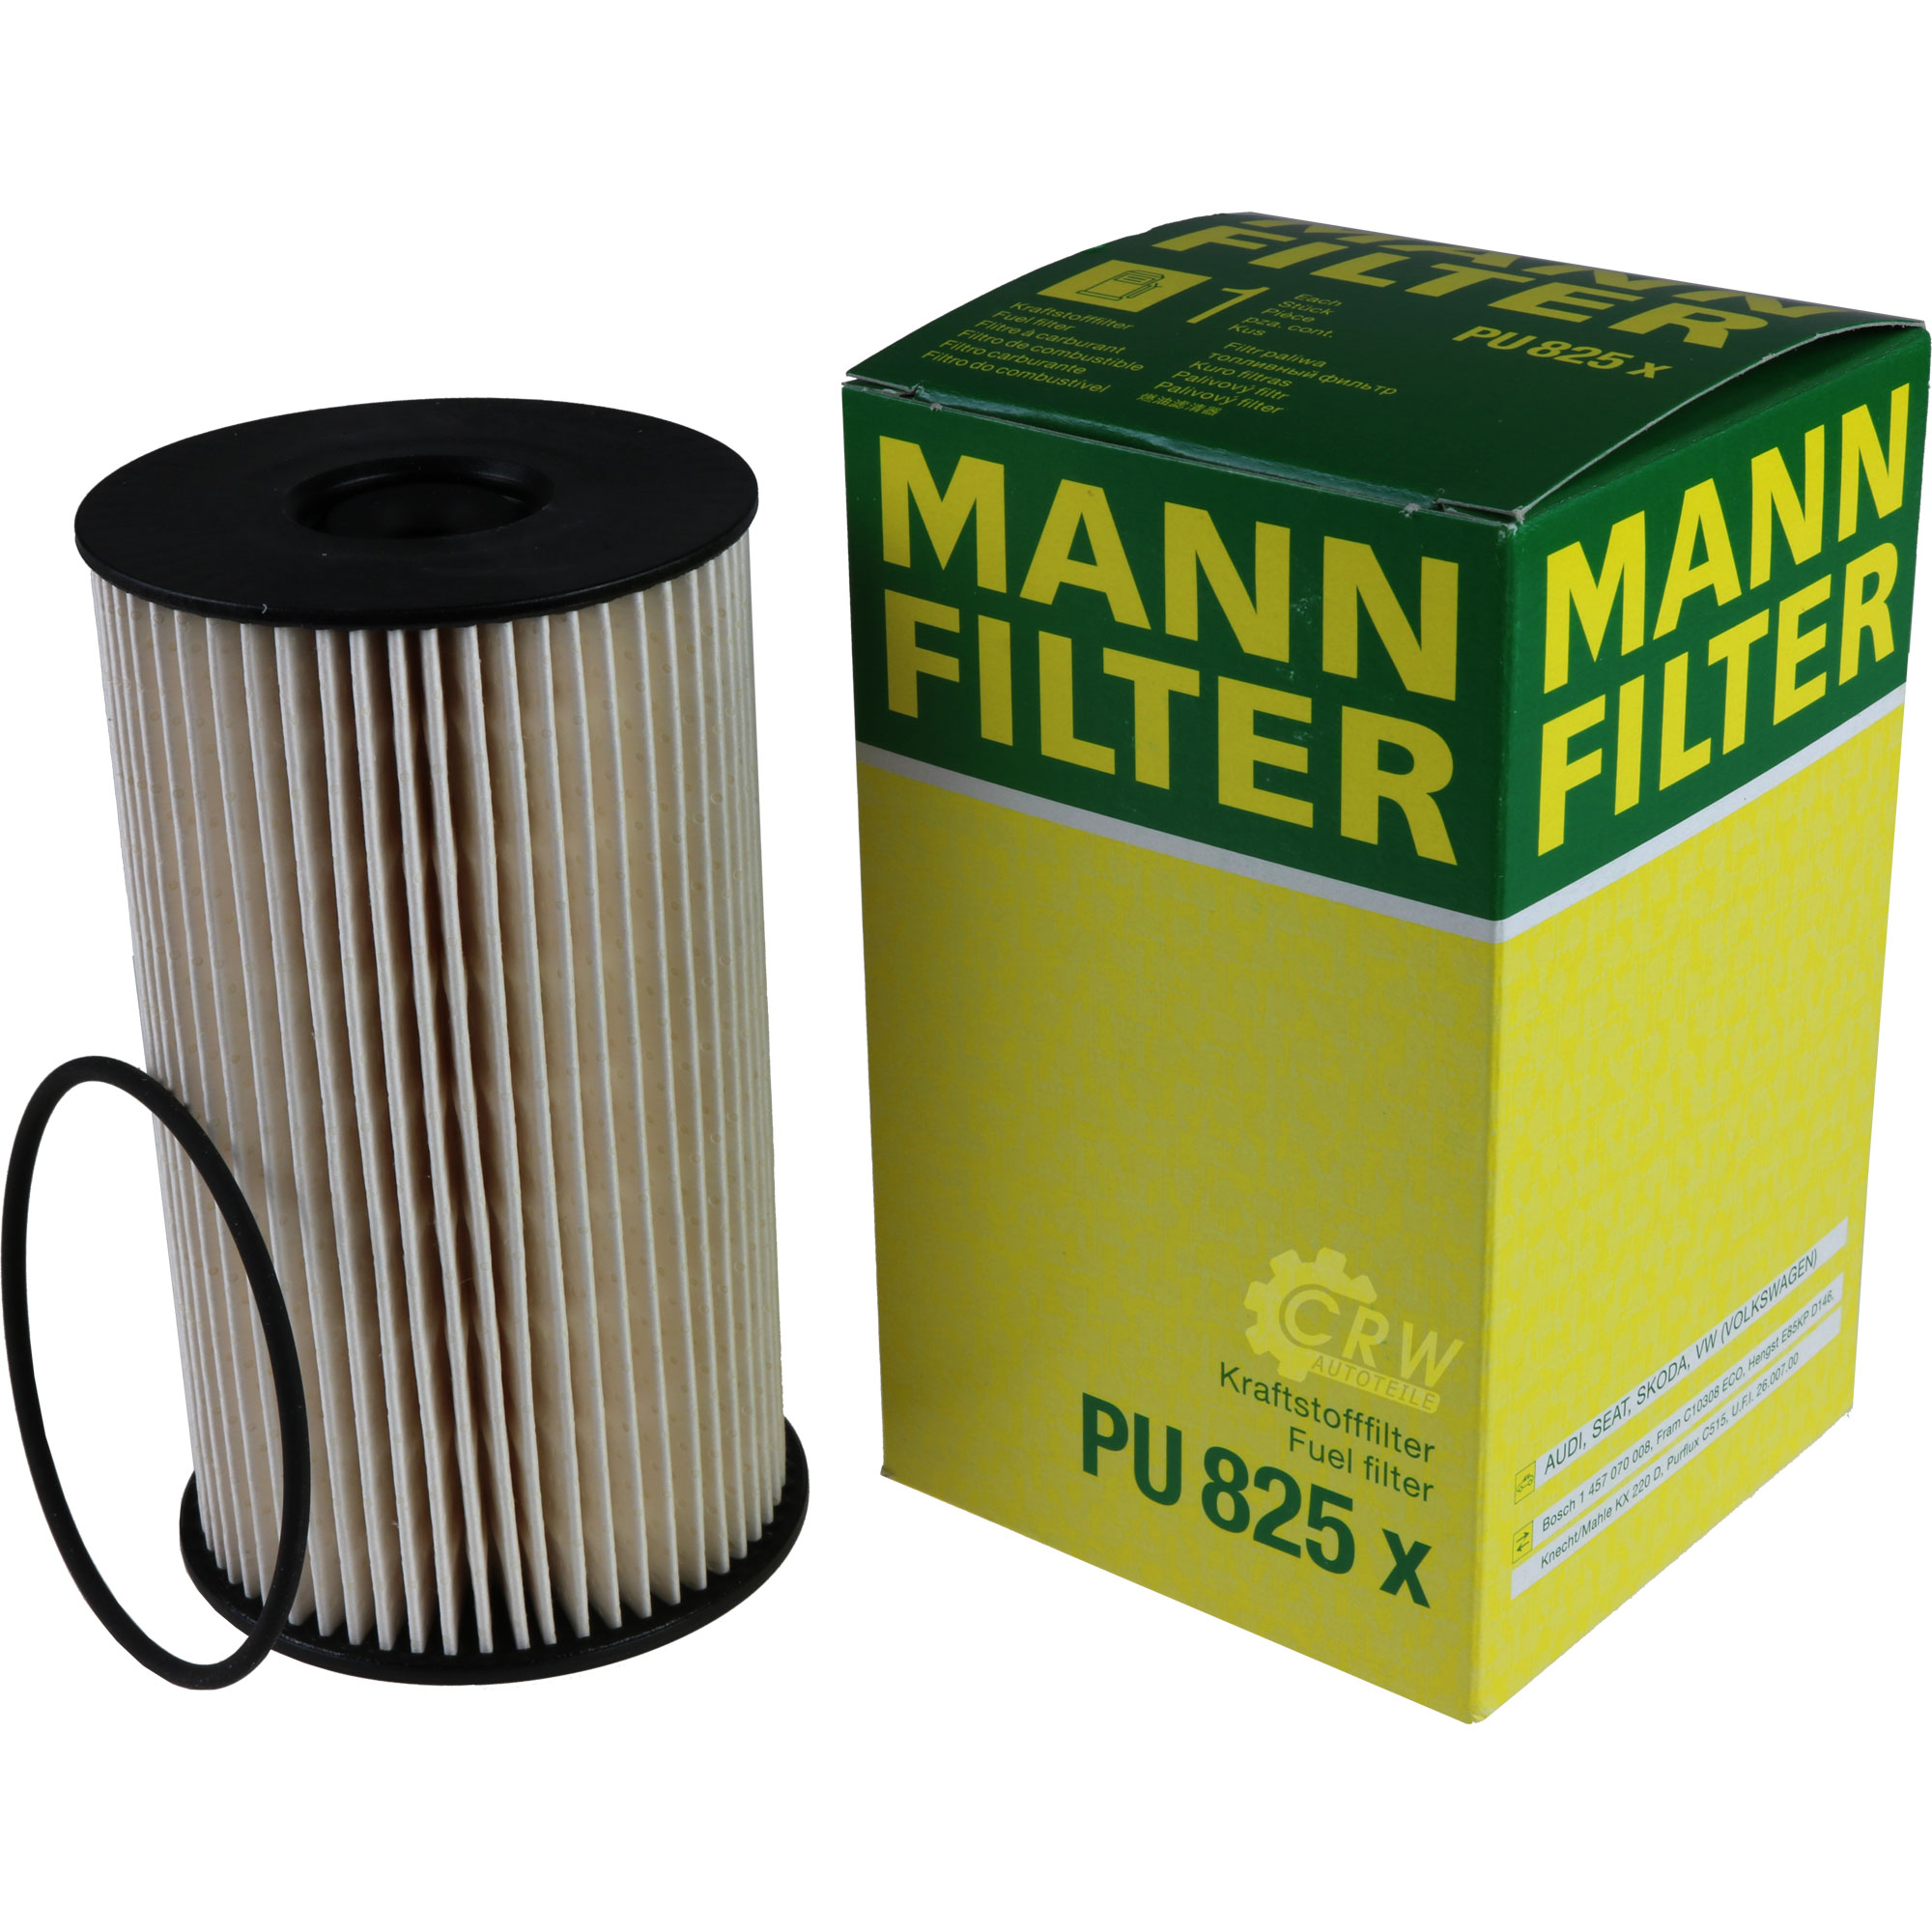 MANN-FILTER Kraftstofffilter PU 825 x Fuel Filter